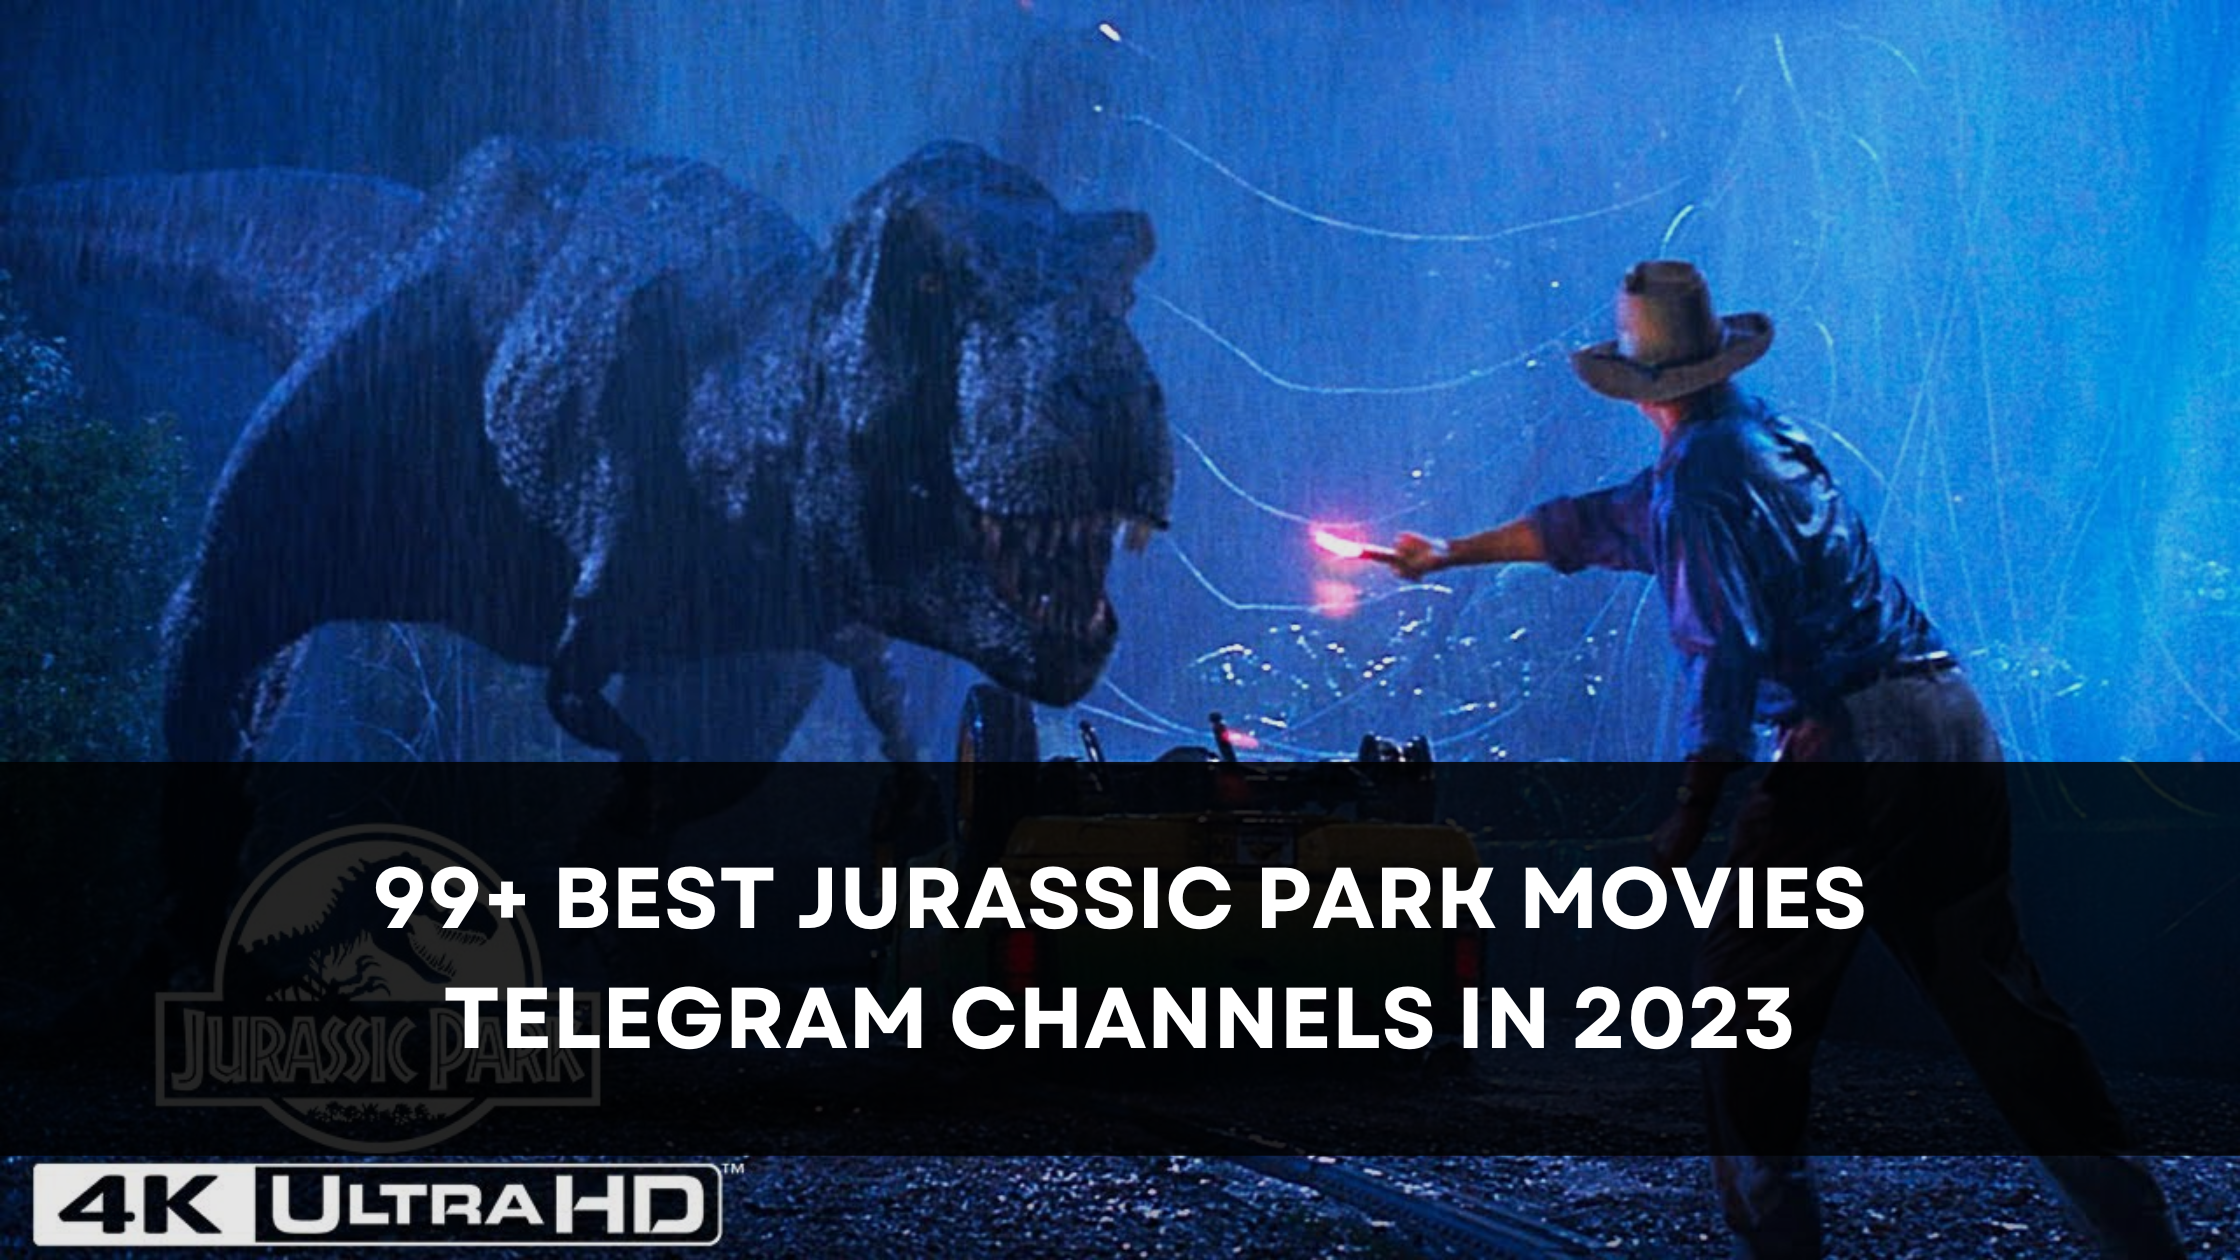 99+ Best Jurassic Park Movies Telegram Channels in 2023